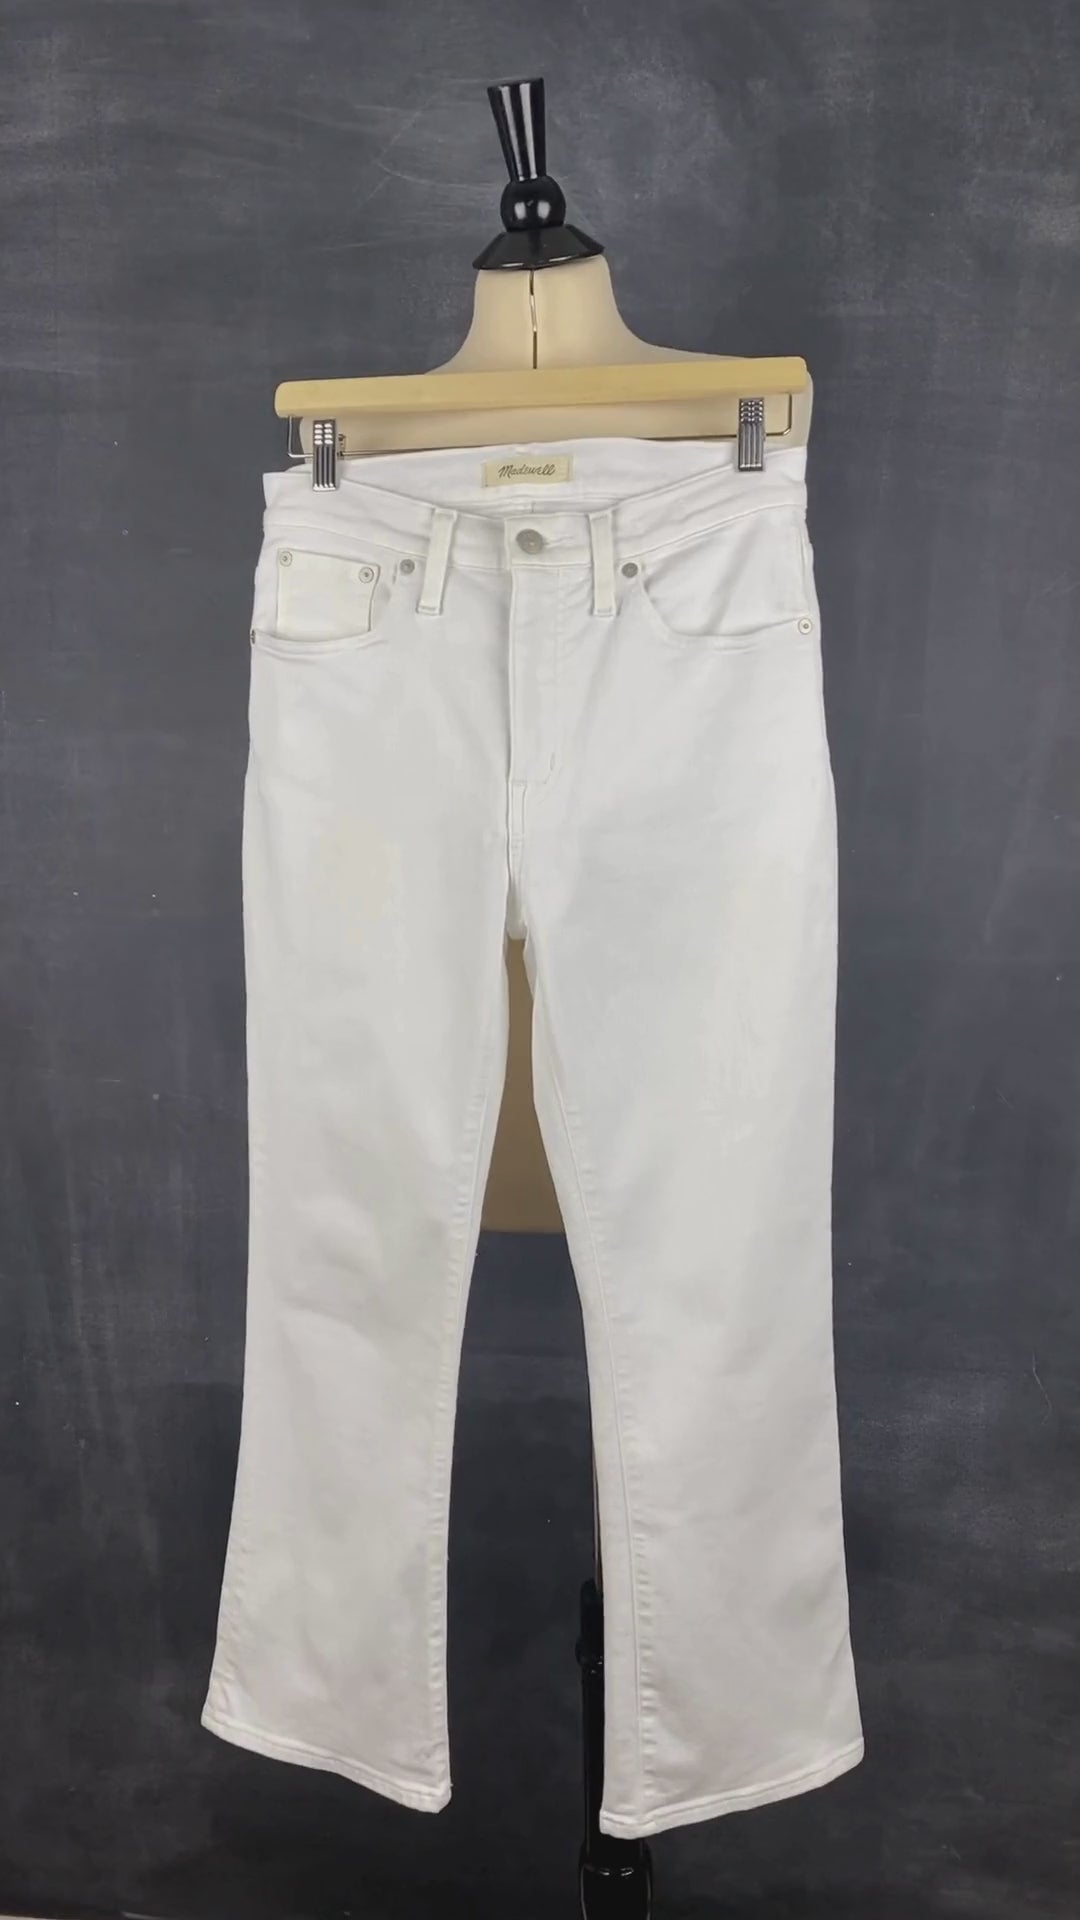 Pantalon blanc légèrement évasé Madewell, taille 28. Vue de la vidéo qui présente tous les détails du pantalon.